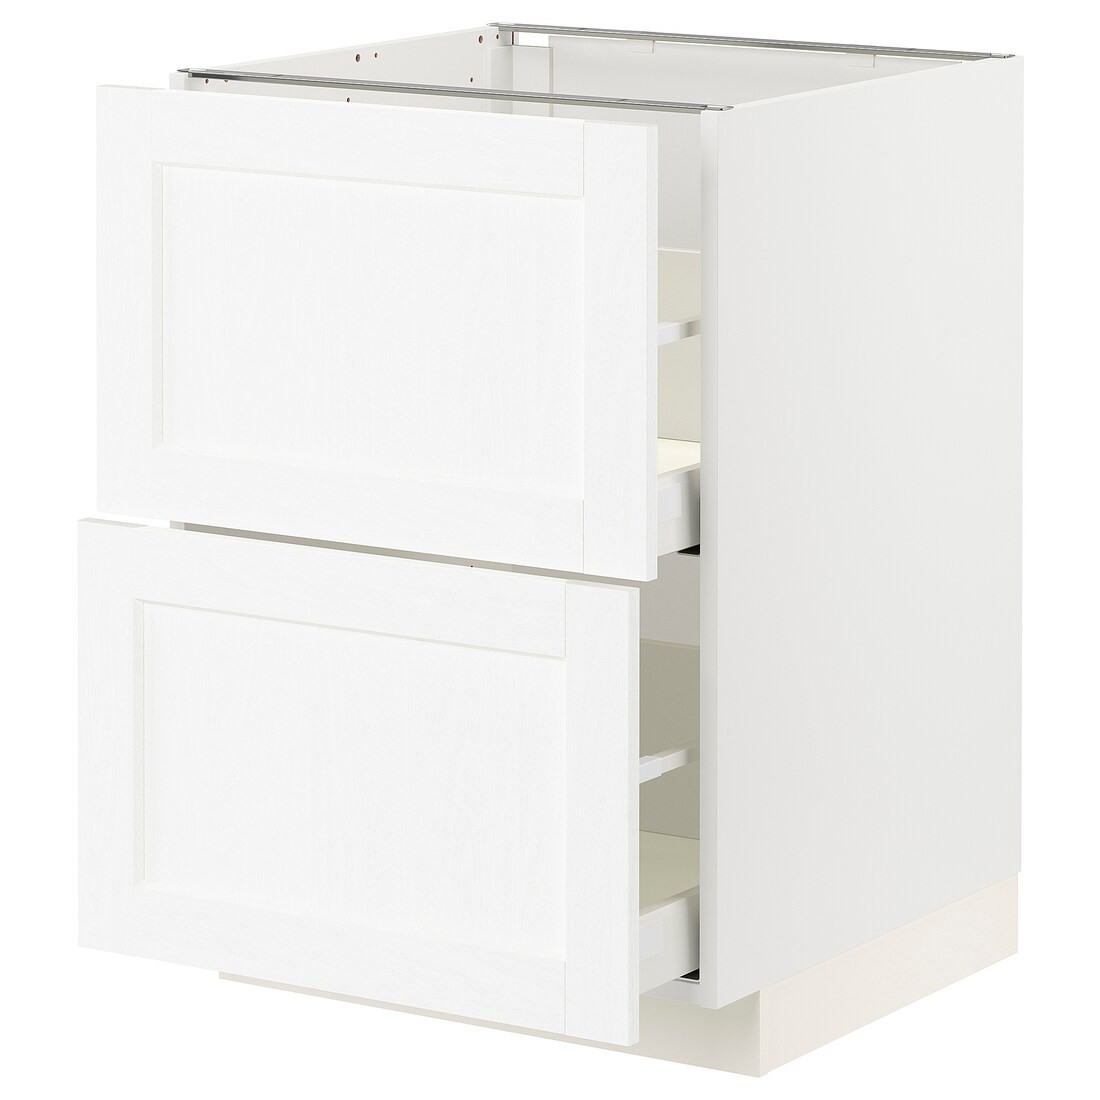 IKEA METOD МЕТОД / MAXIMERA МАКСИМЕРА Напольный шкаф с ящиками, белый Enköping / белый имитация дерева, 60x60 см 39473395 394.733.95